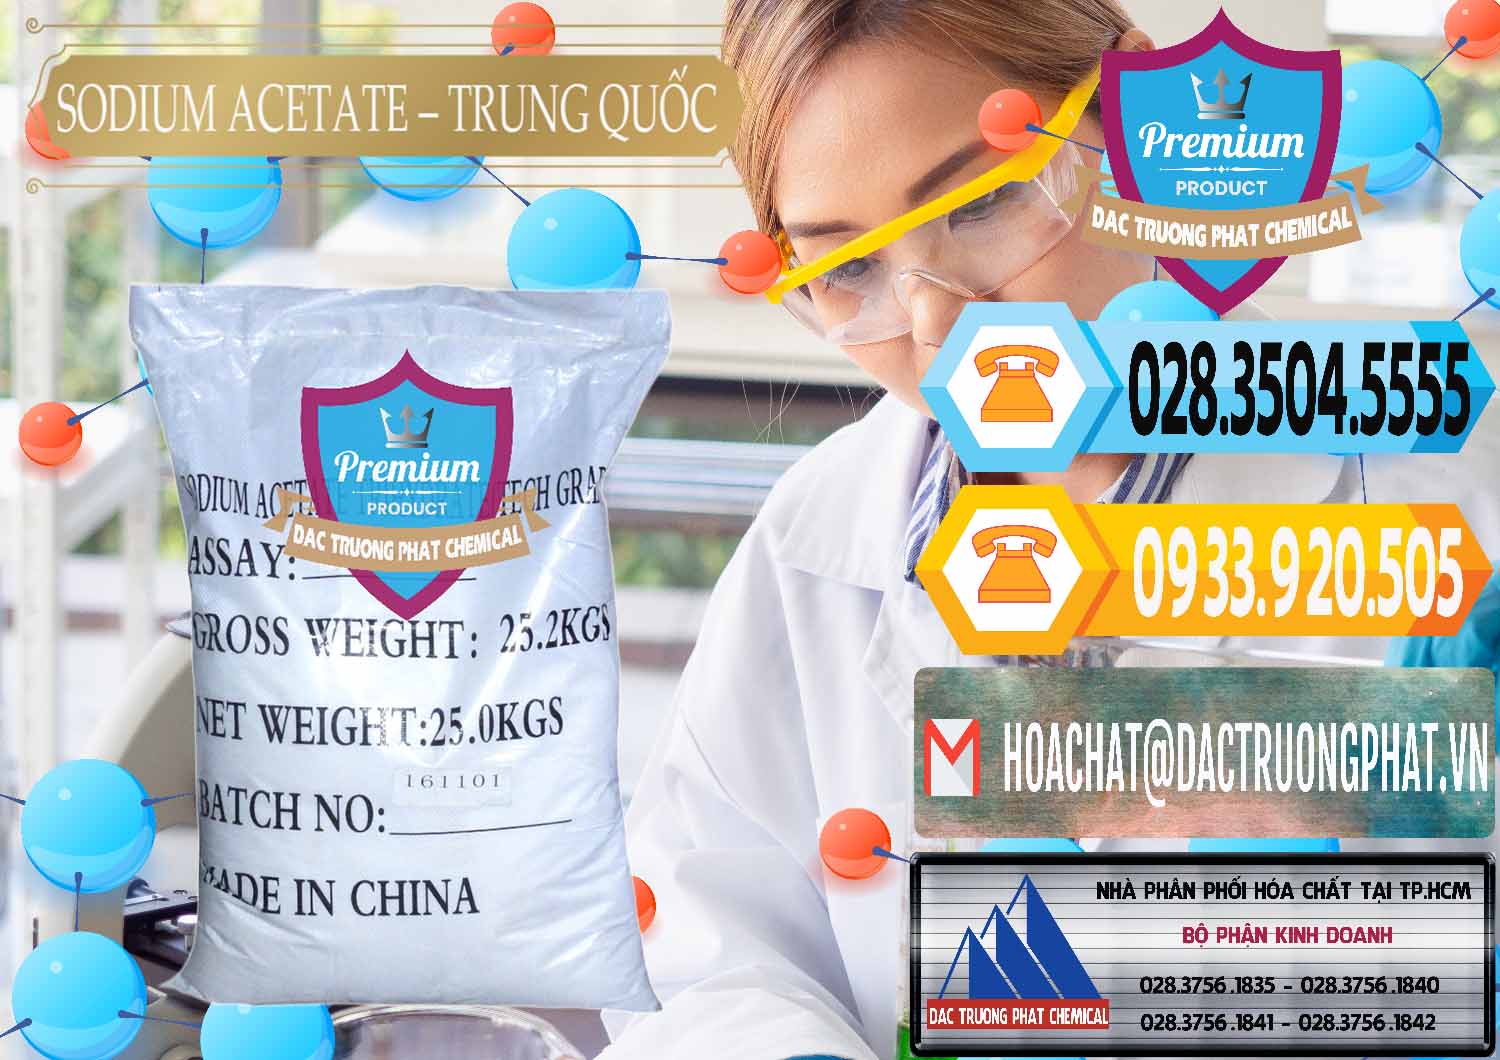 Đơn vị chuyên bán _ cung cấp Sodium Acetate - Natri Acetate Trung Quốc China - 0134 - Công ty phân phối - cung cấp hóa chất tại TP.HCM - hoachattayrua.net